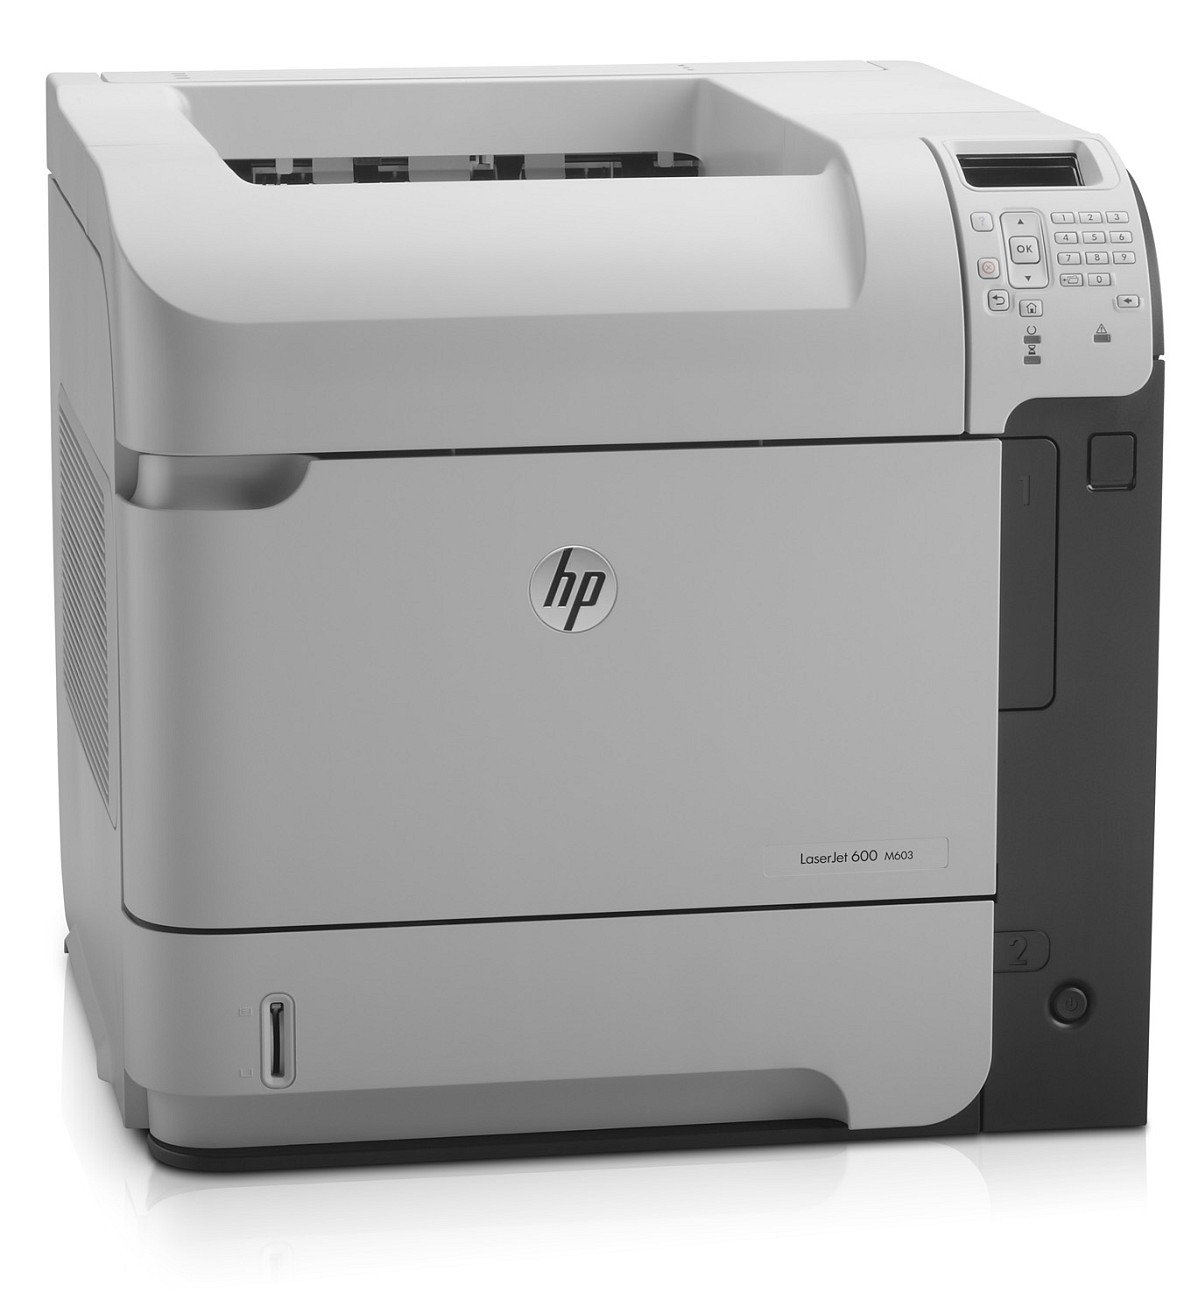 HP LaserJet Enterprise 600 M603dn (CE995A)